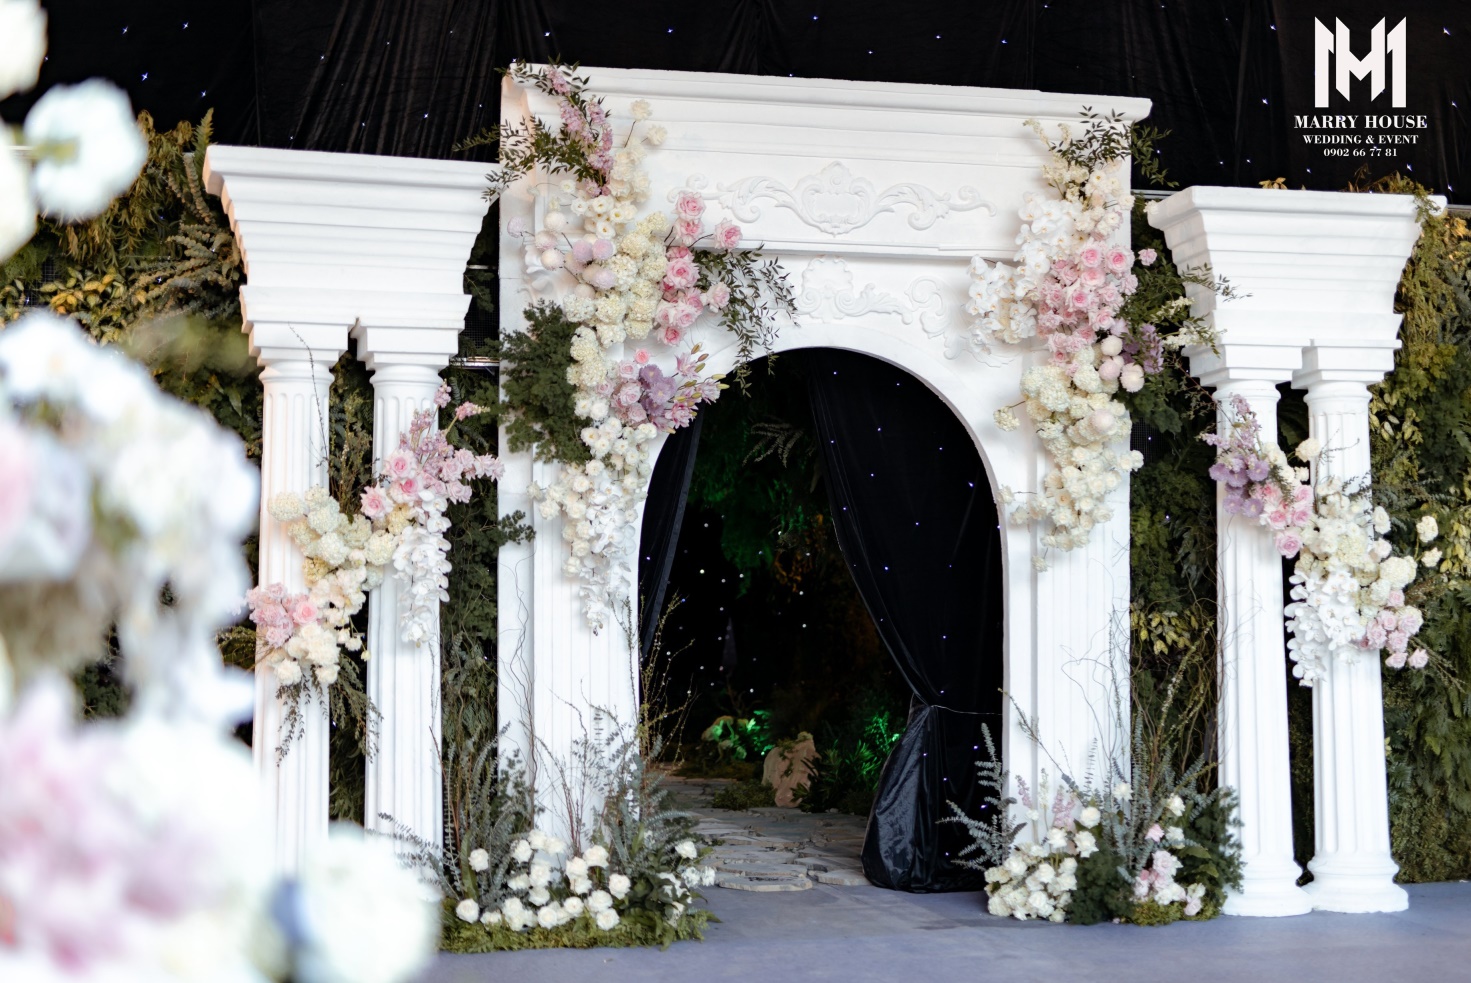 Marry House - Hoàn thiện đám cưới với 6 tấn hoa trong vòng 1 tháng bởi 150 nhân công - Ảnh 3.